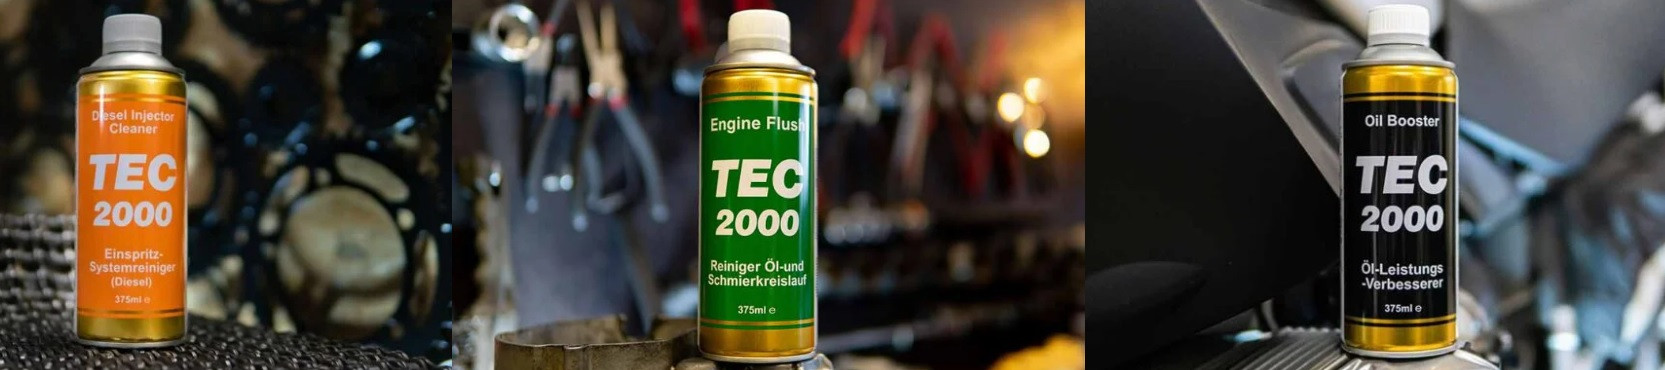 TEC2000